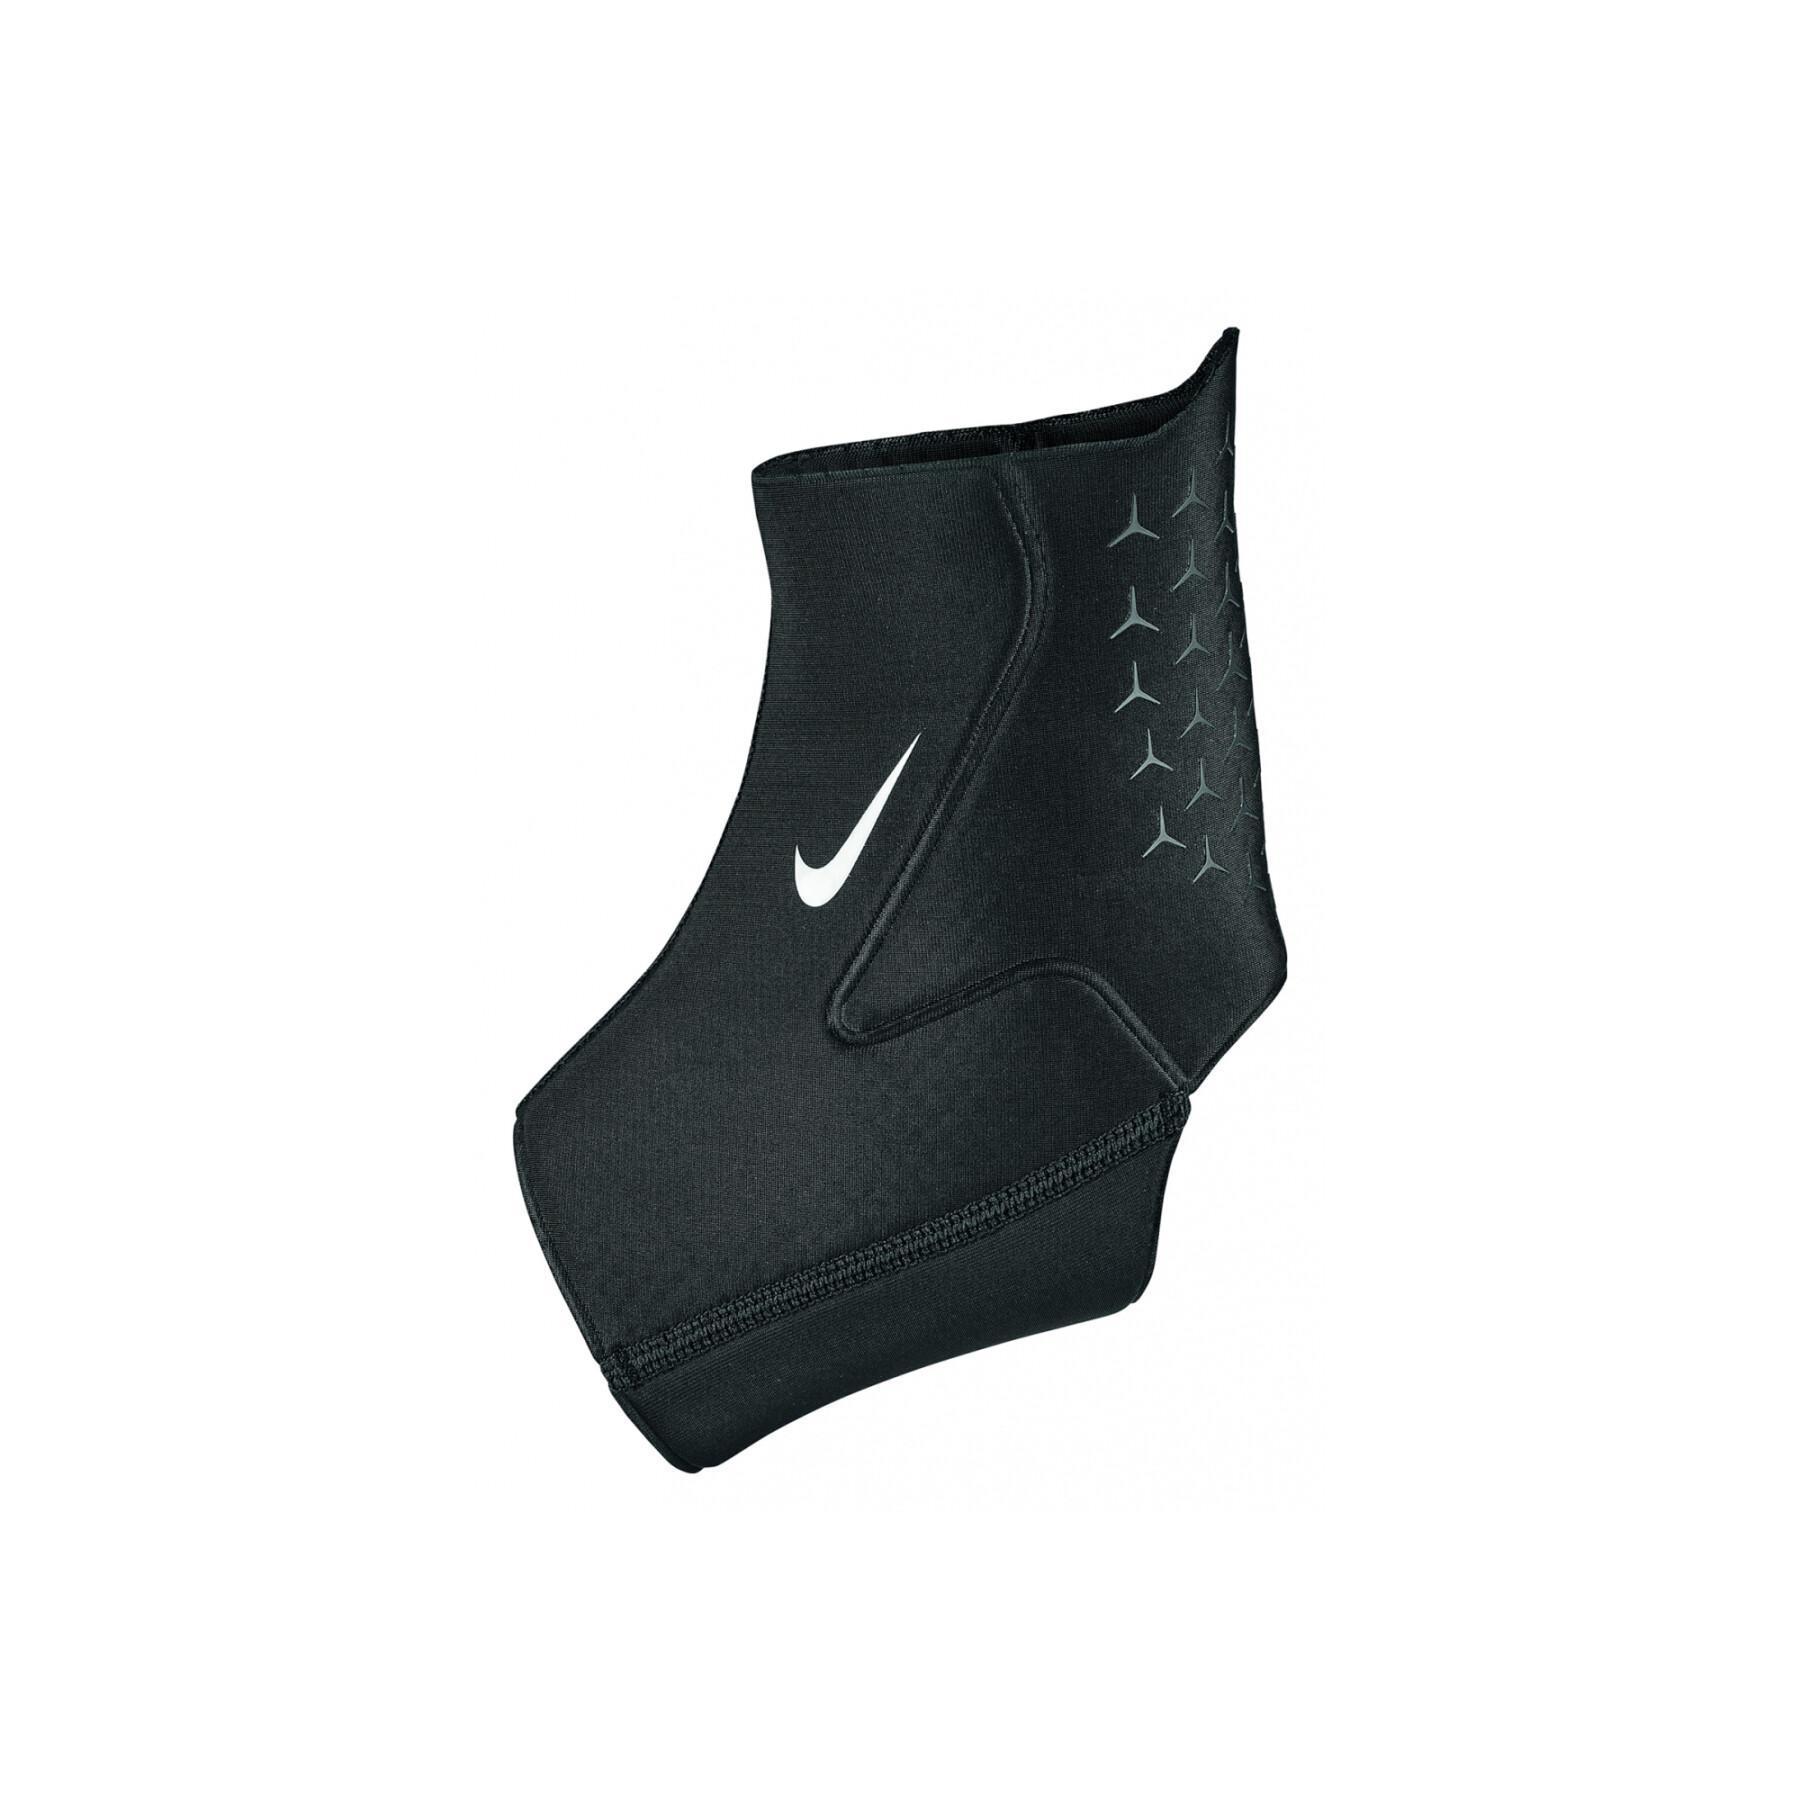 Tornozeleira Nike pro 3.0